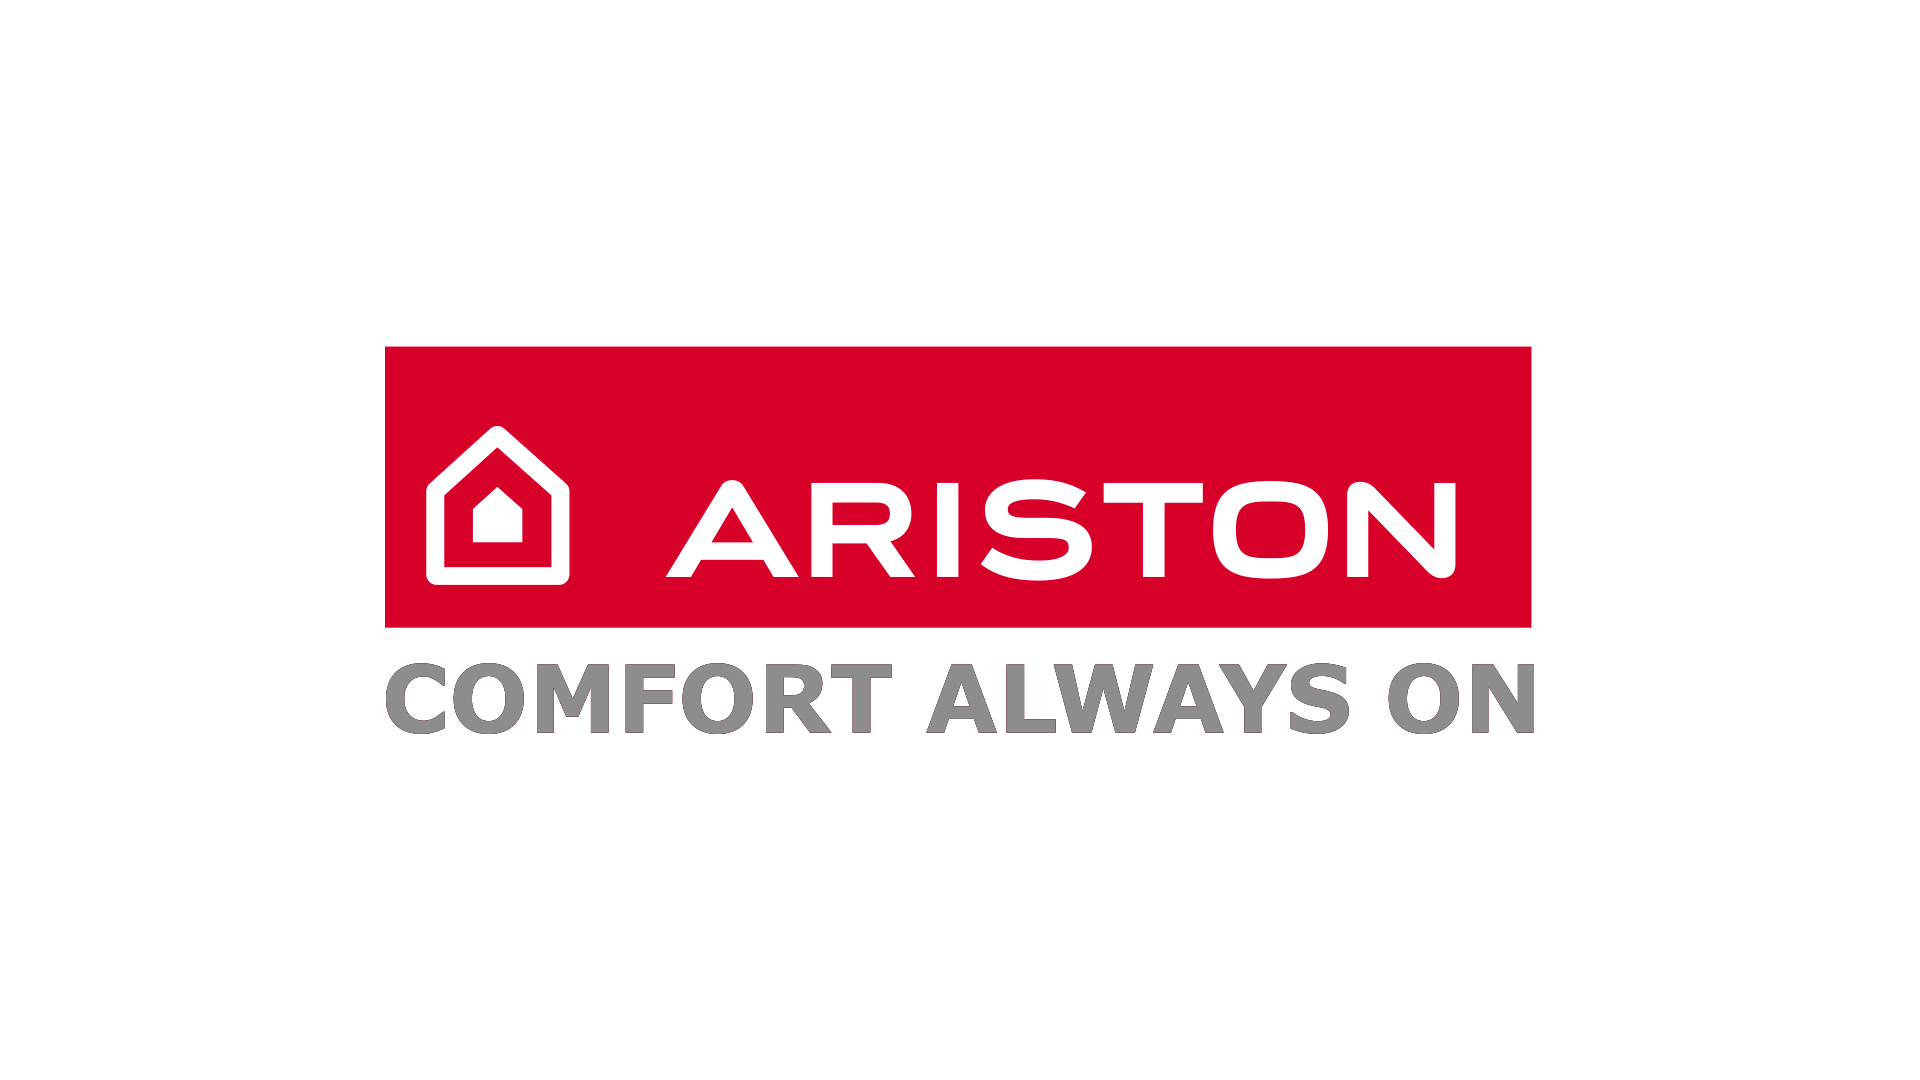 Ariston фирма. Фирма Ariston. Аристон лого. Арис лого. Hotpoint Ariston логотип.